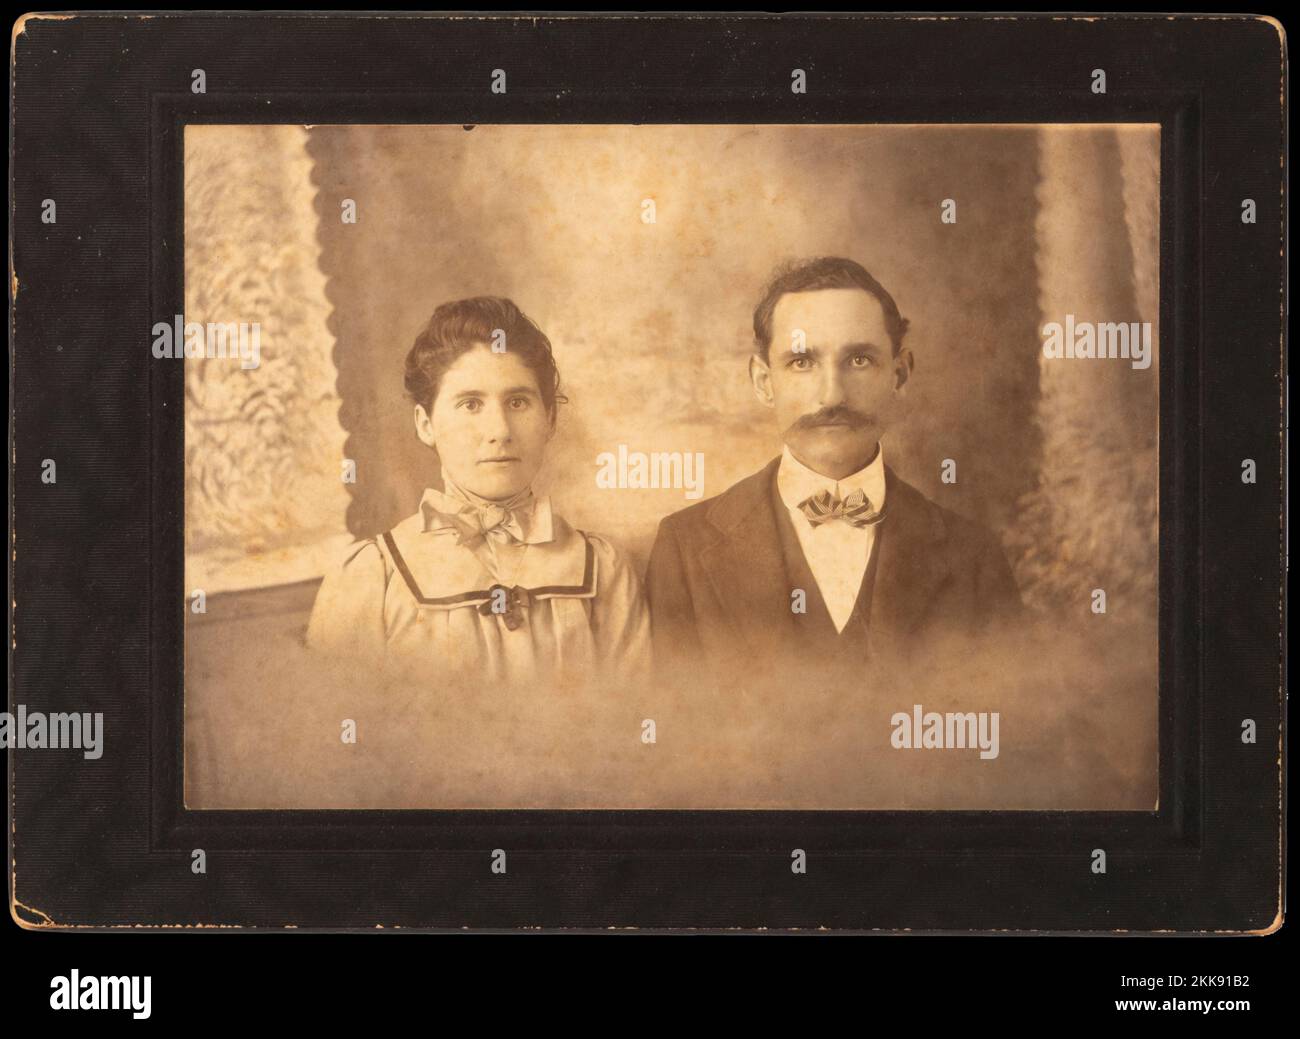 Un familiar fallecido hace mucho tiempo del fotógrafo con su joven esposa teniendo un retrato en probablemente a finales de los años 1800s. Foto de stock